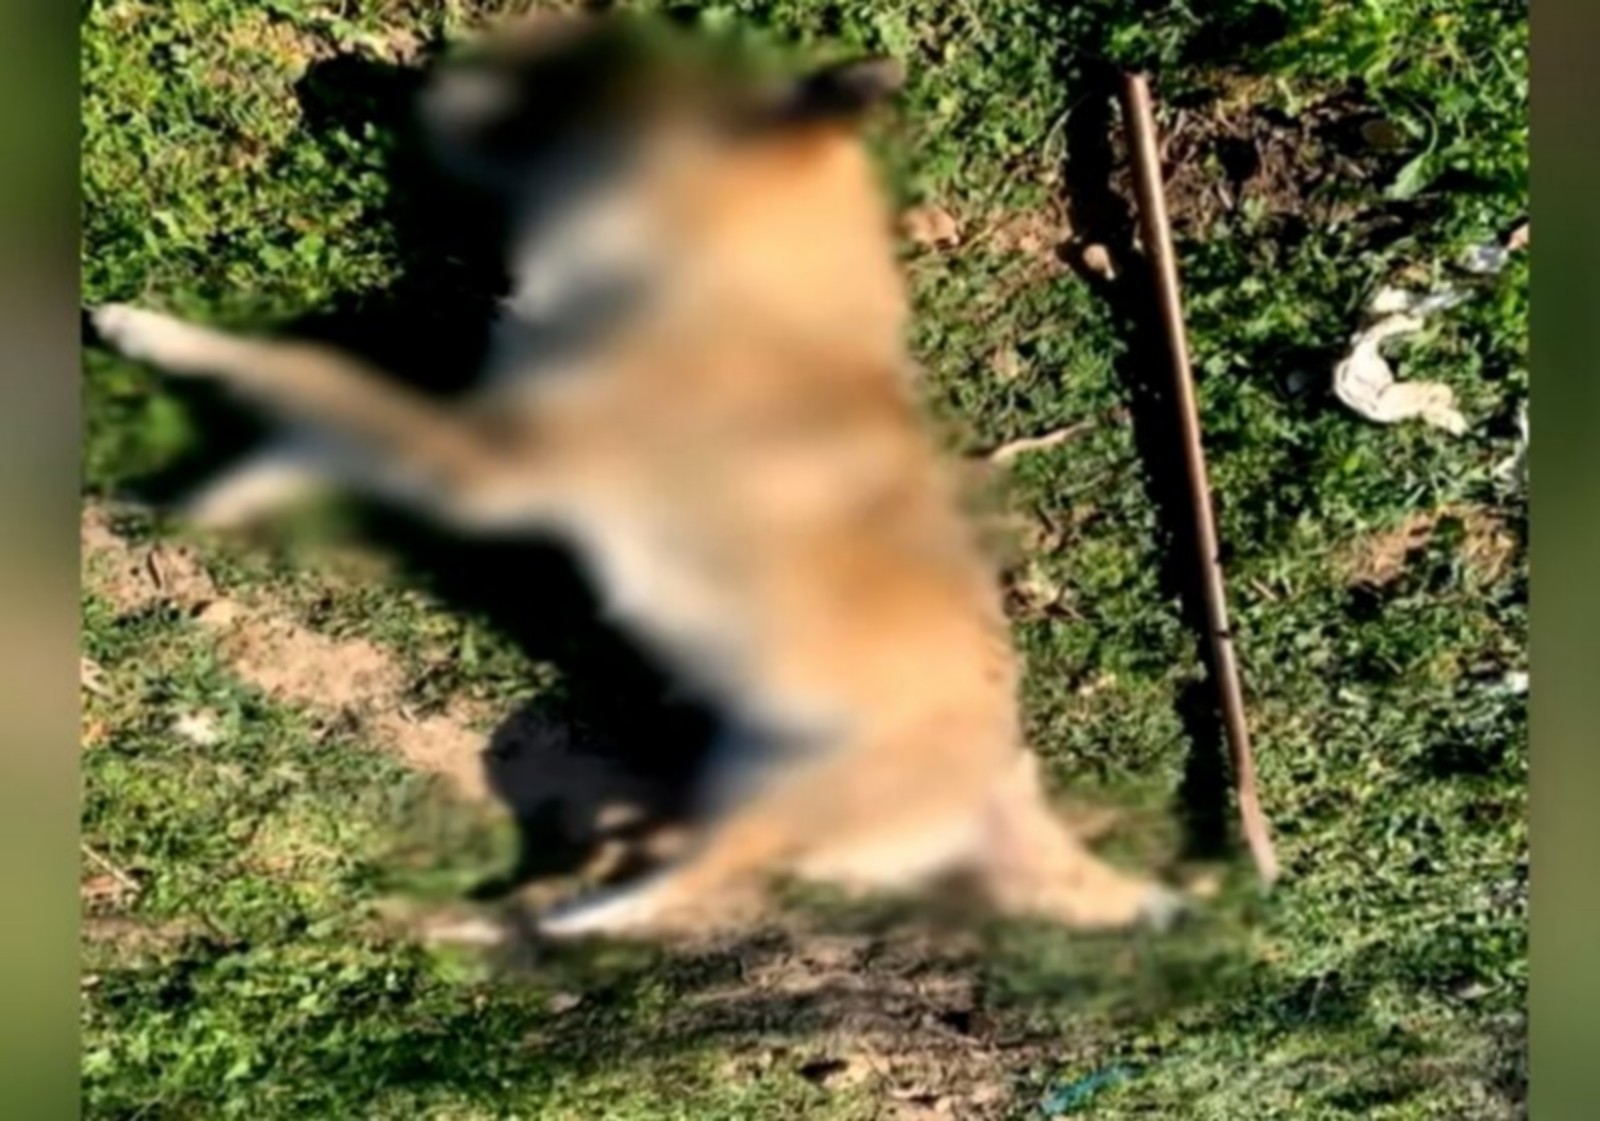 Μέγαρα: Εισαγγελική παρέμβαση για τον μέχρι θανάτου βασανισμό σκύλου